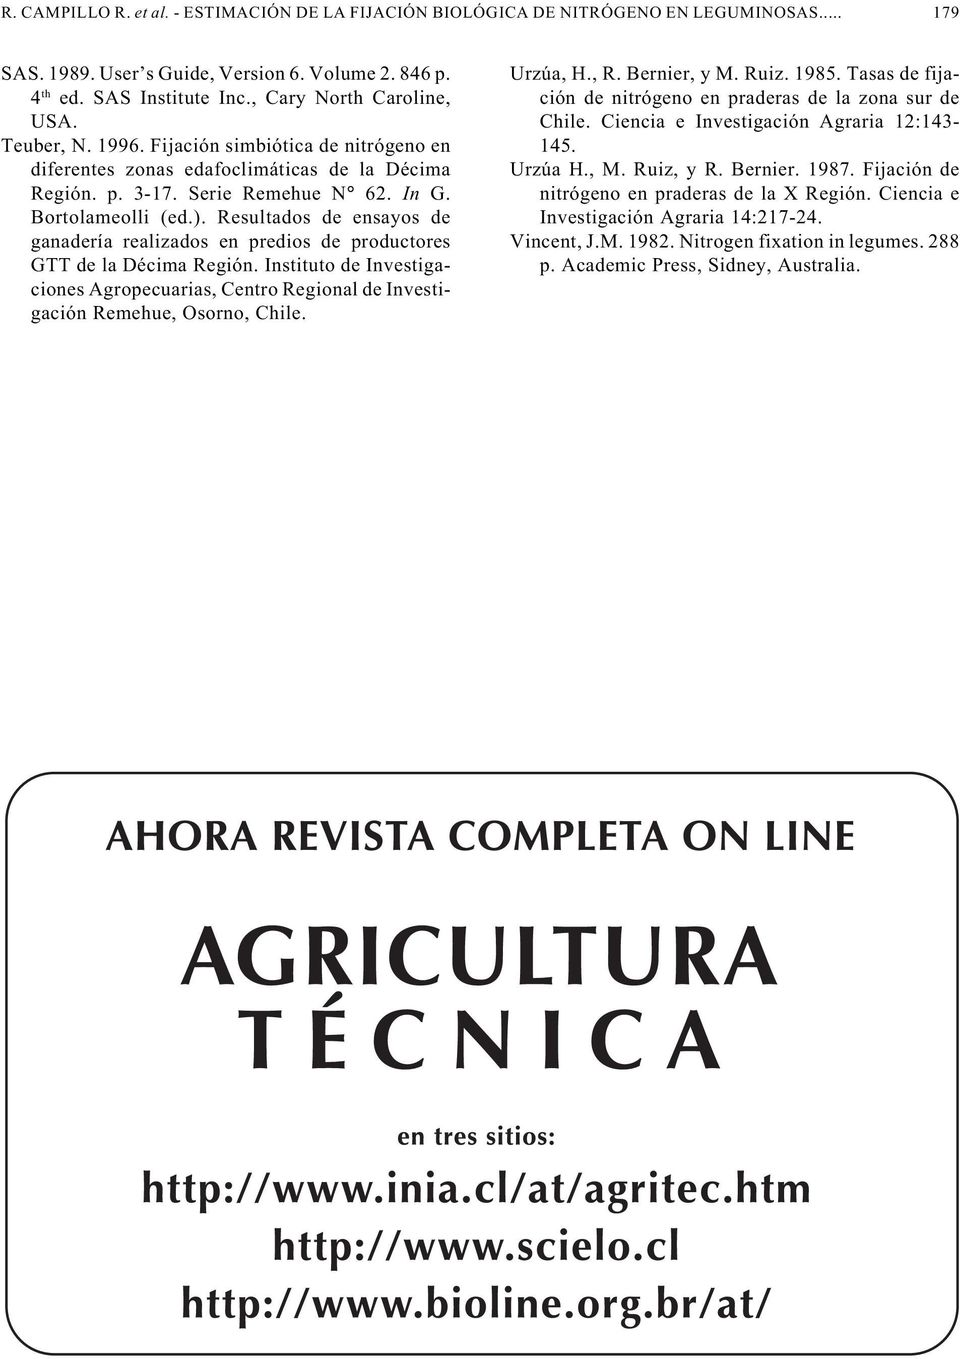 Resultados de ensayos de ganadería realizados en predios de productores GTT de la Décima Región. Instituto de Investigaciones Agropecuarias, Centro Regional de Investigación Remehue, Osorno, Chile.